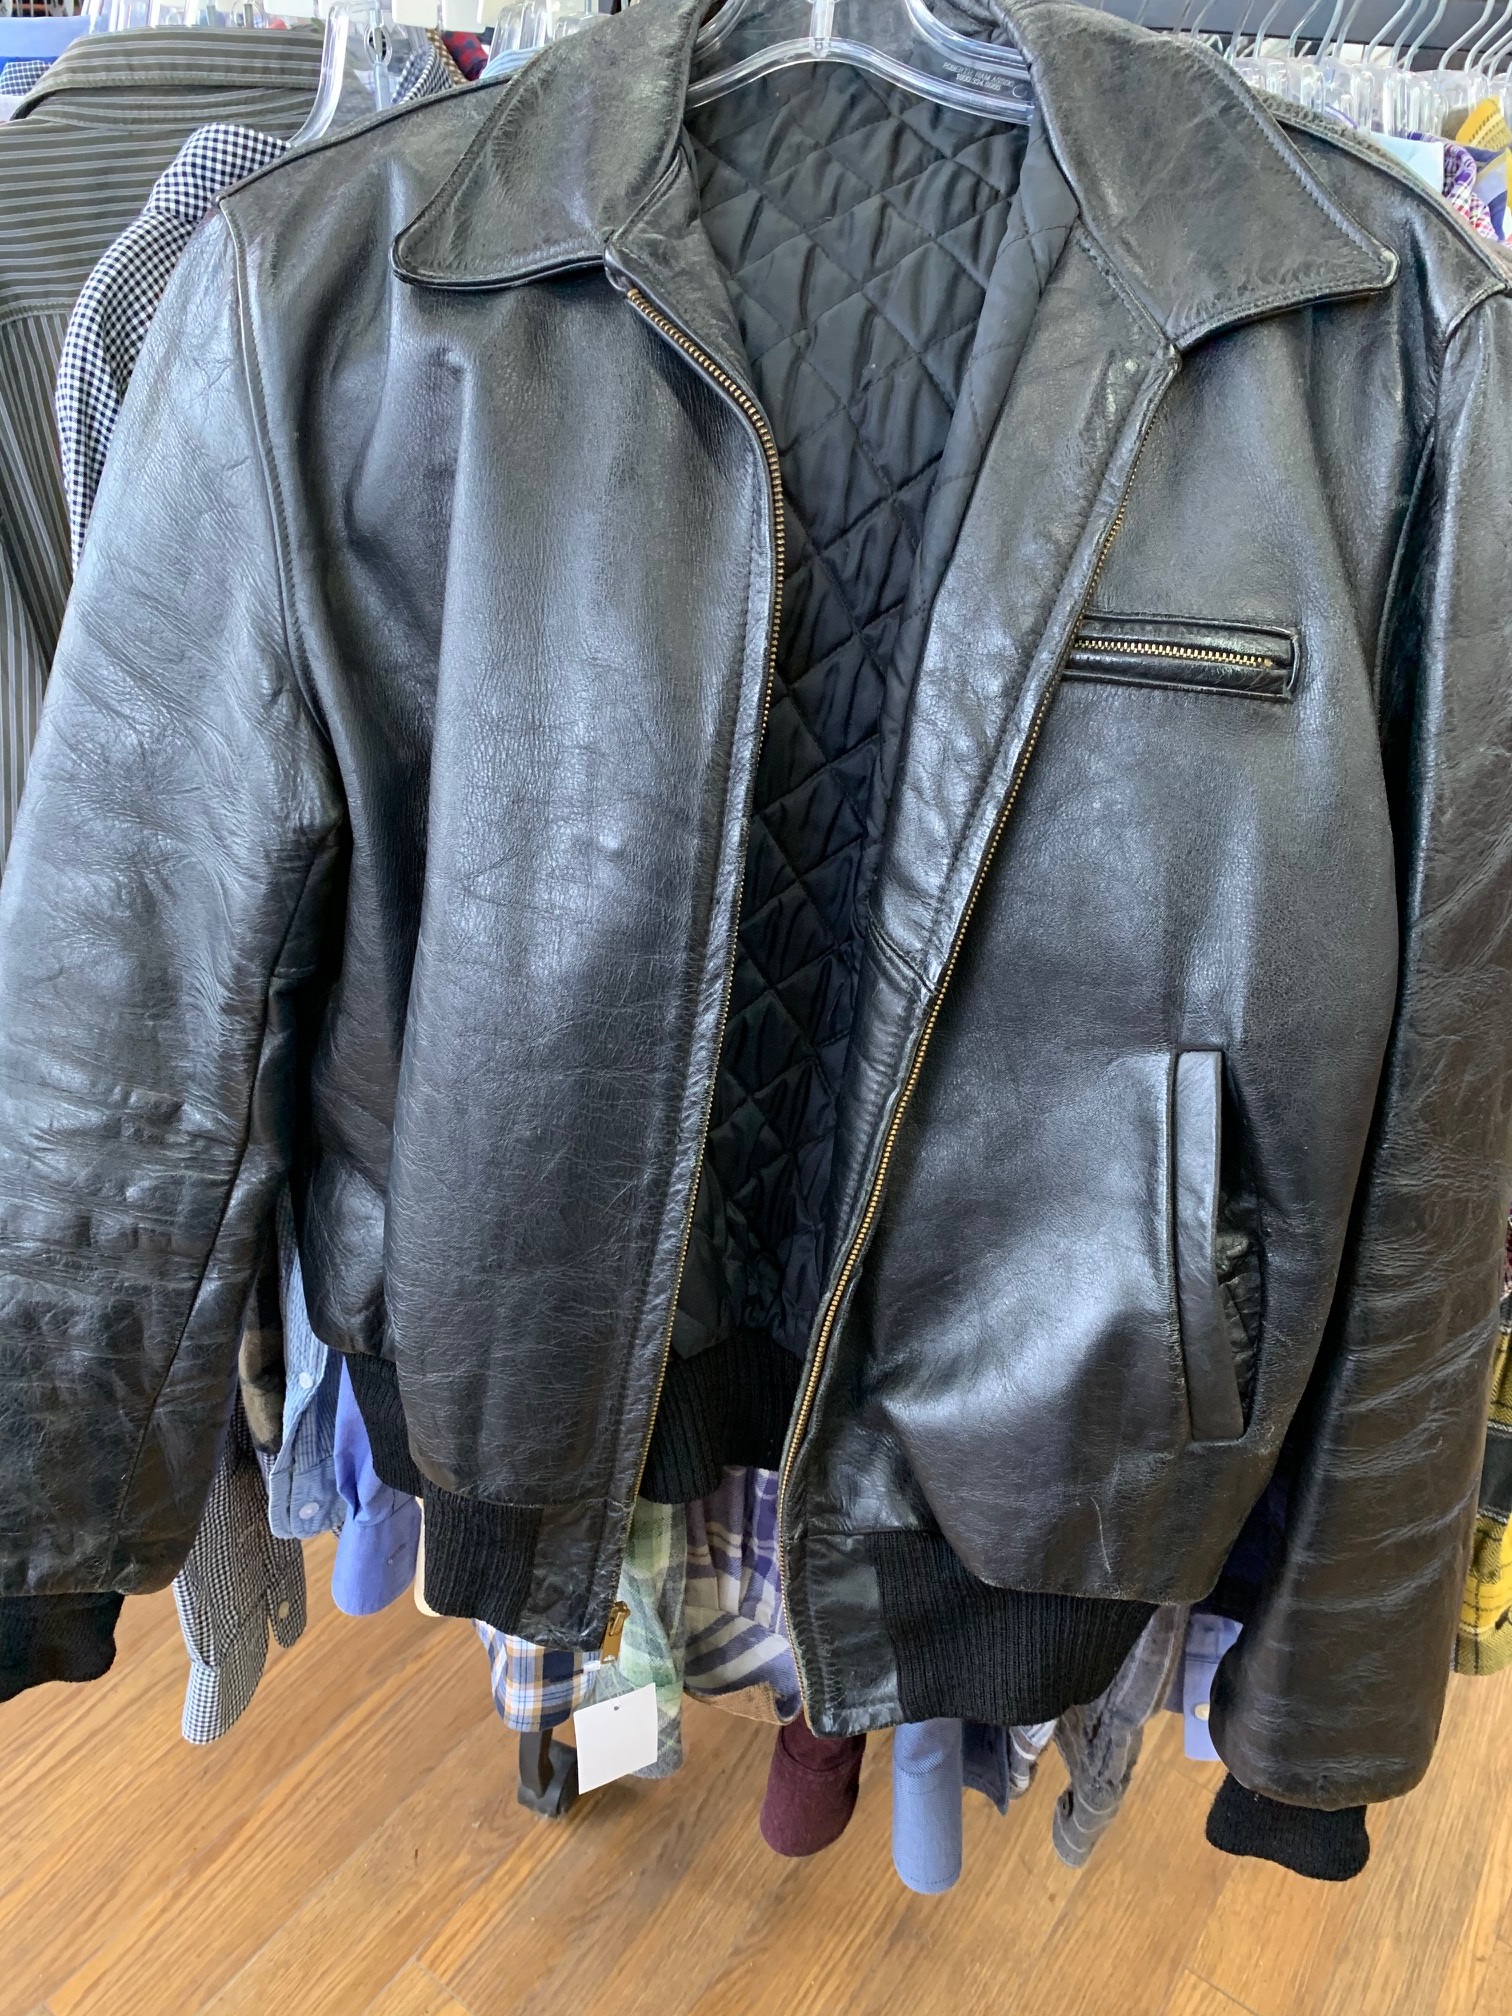 Need help identifying vintage jacket | The Fedora Lounge